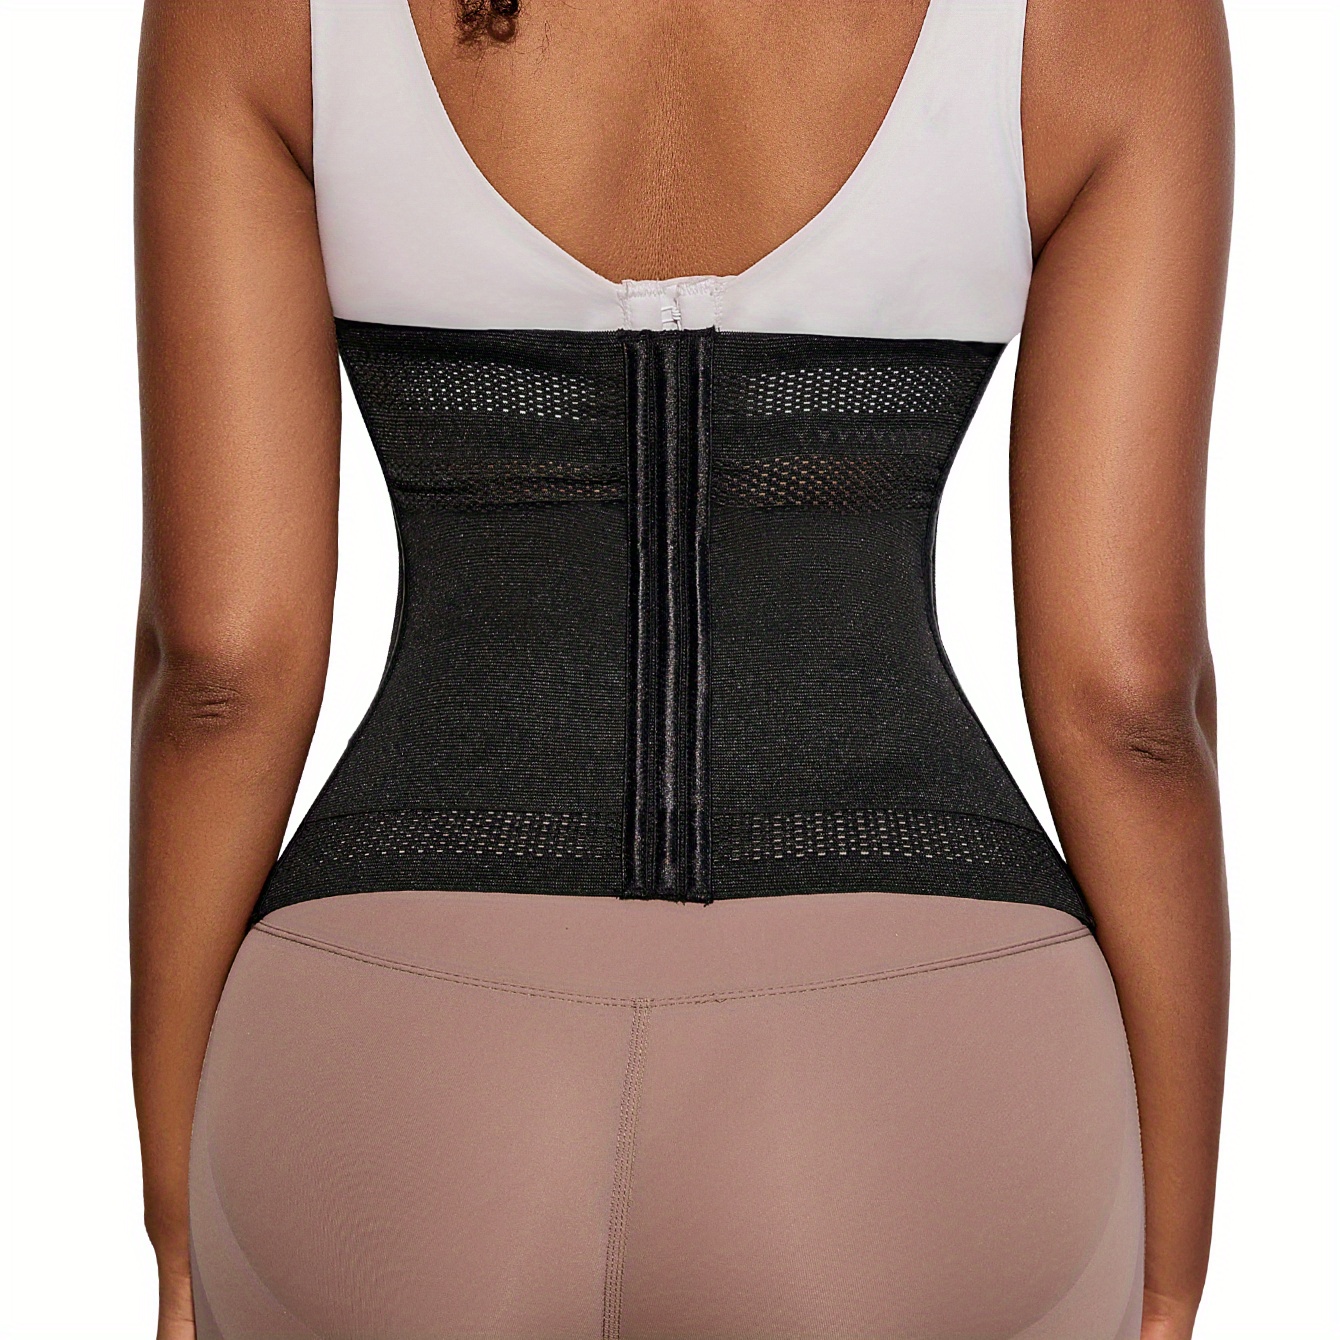 Buy New Womens Waist Trainer/Belly Flattener/Shapewear - Black S